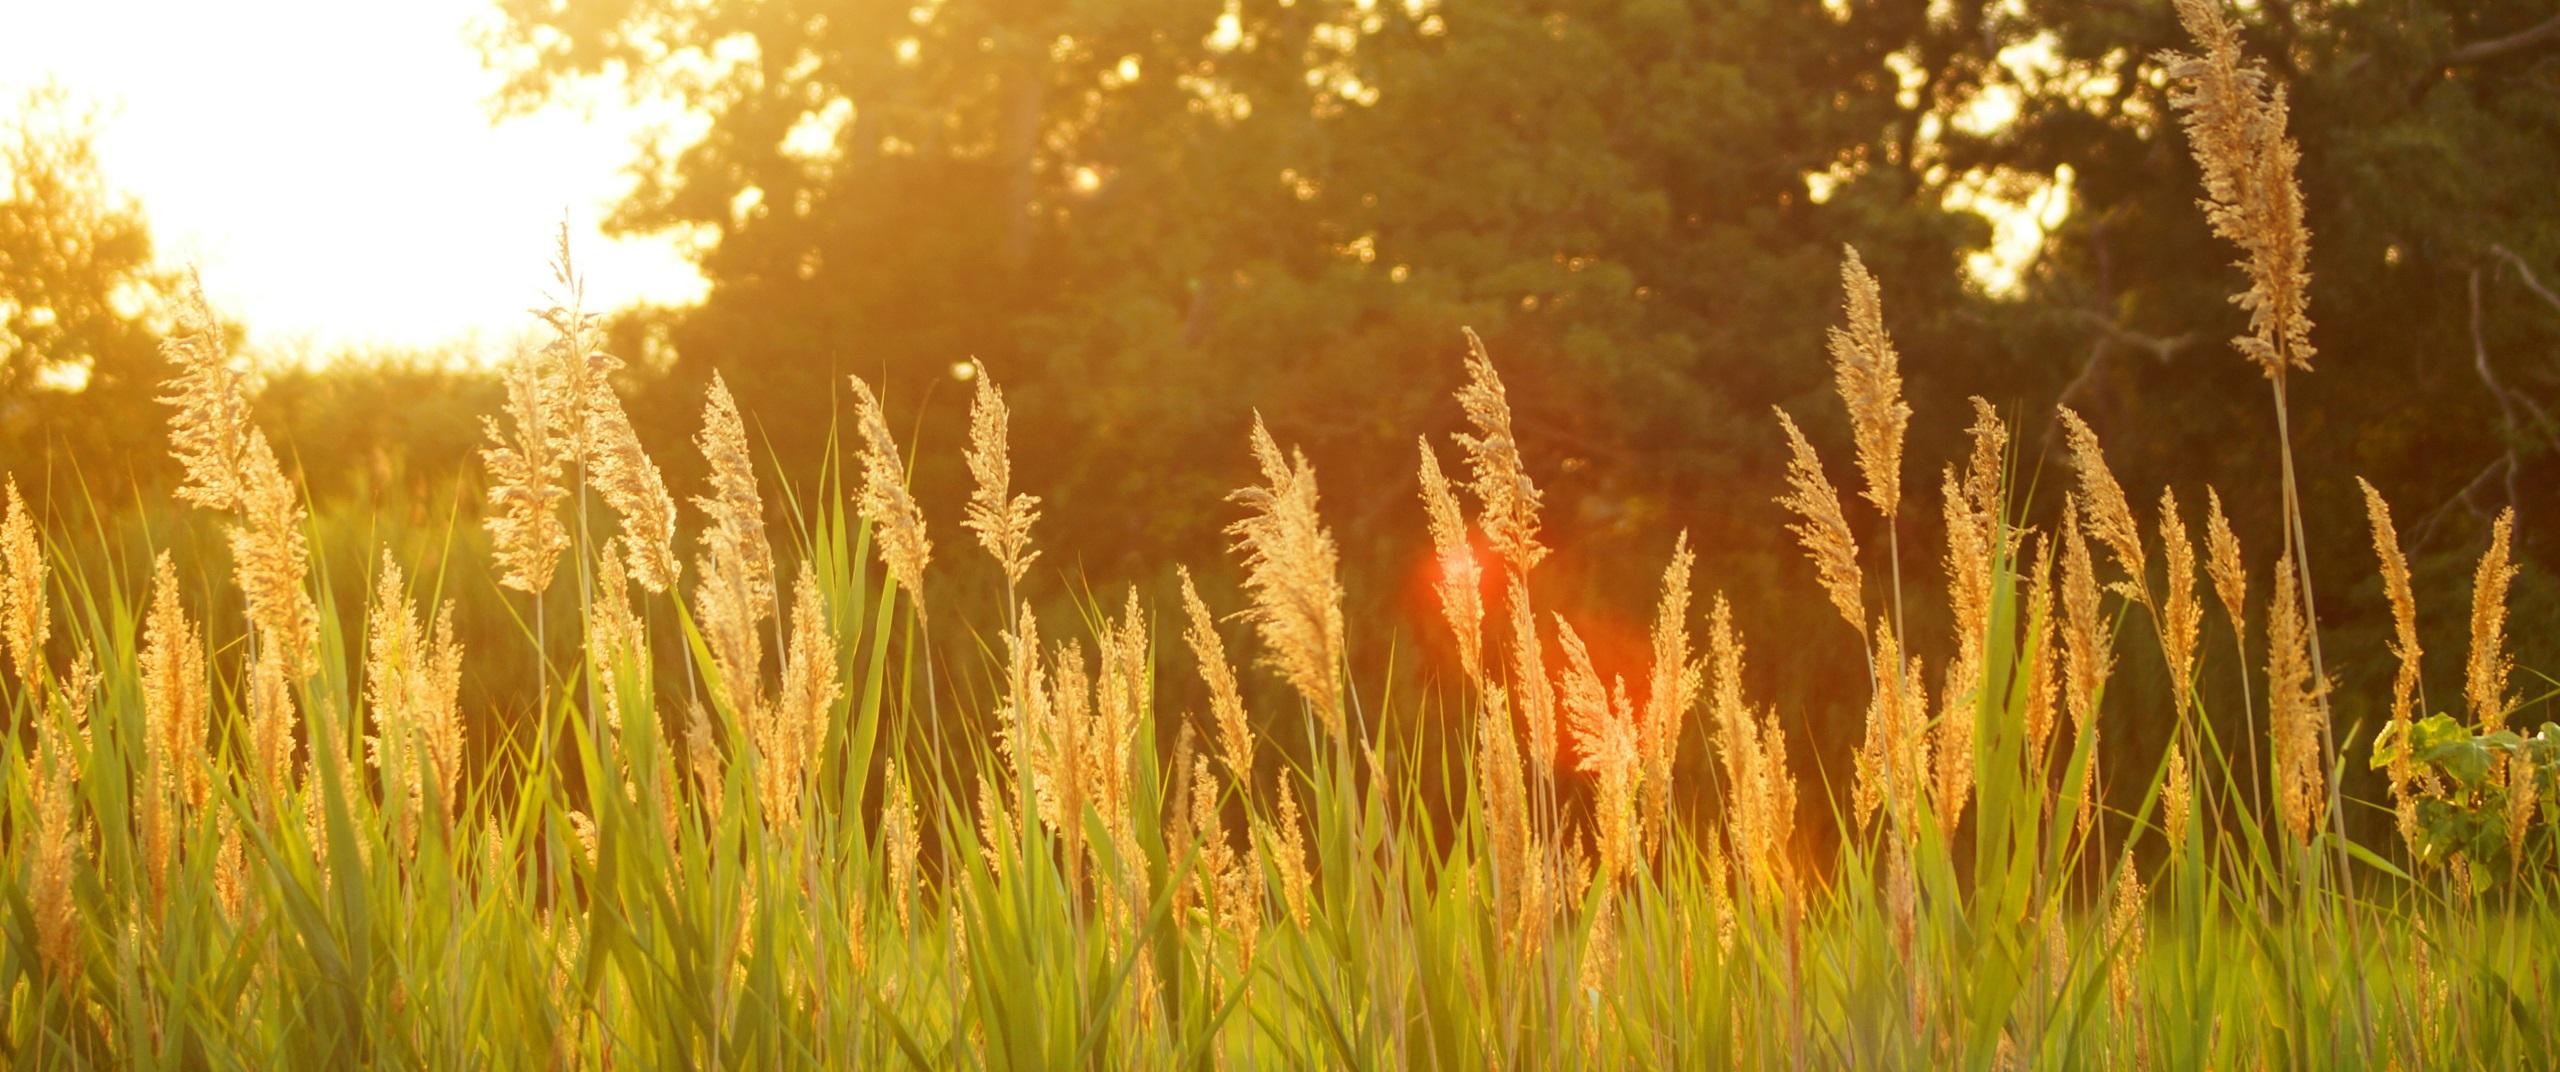 summer grass field at sunset